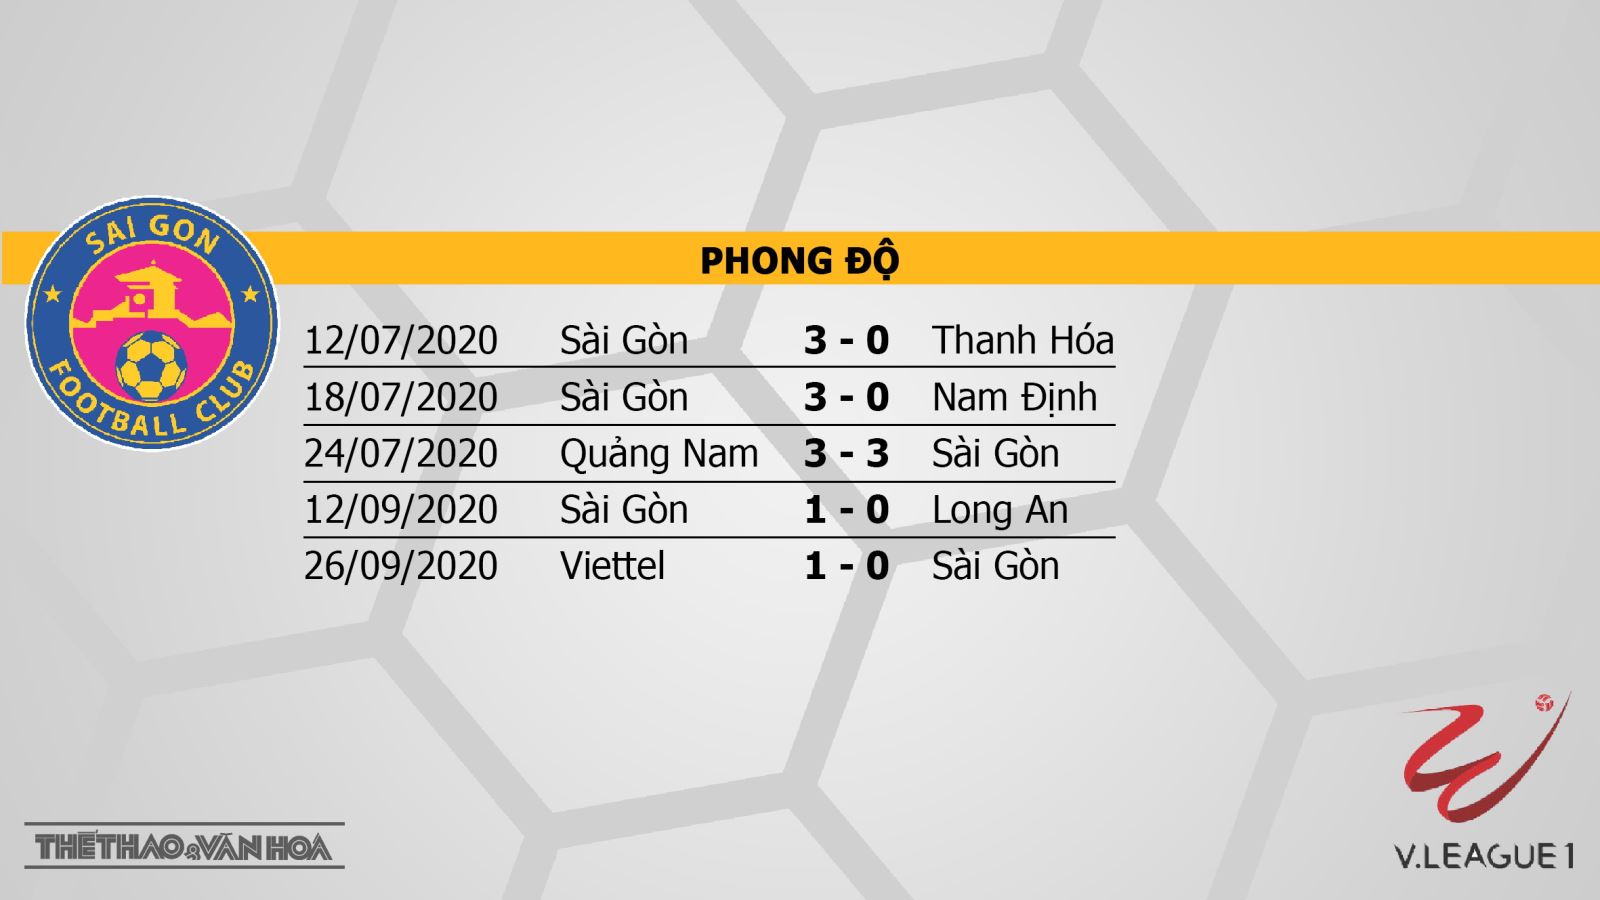 Sài Gòn vs Than Quảng Ninh, Sài Gòn, Than Quảng Ninh, trực tiếp bóng đá Sài Gòn vs Than Quảng Ninh, nhận định bóng đá bóng đá, kèo bóng đá, nhận định Sài Gòn vs Than Quảng Ninh